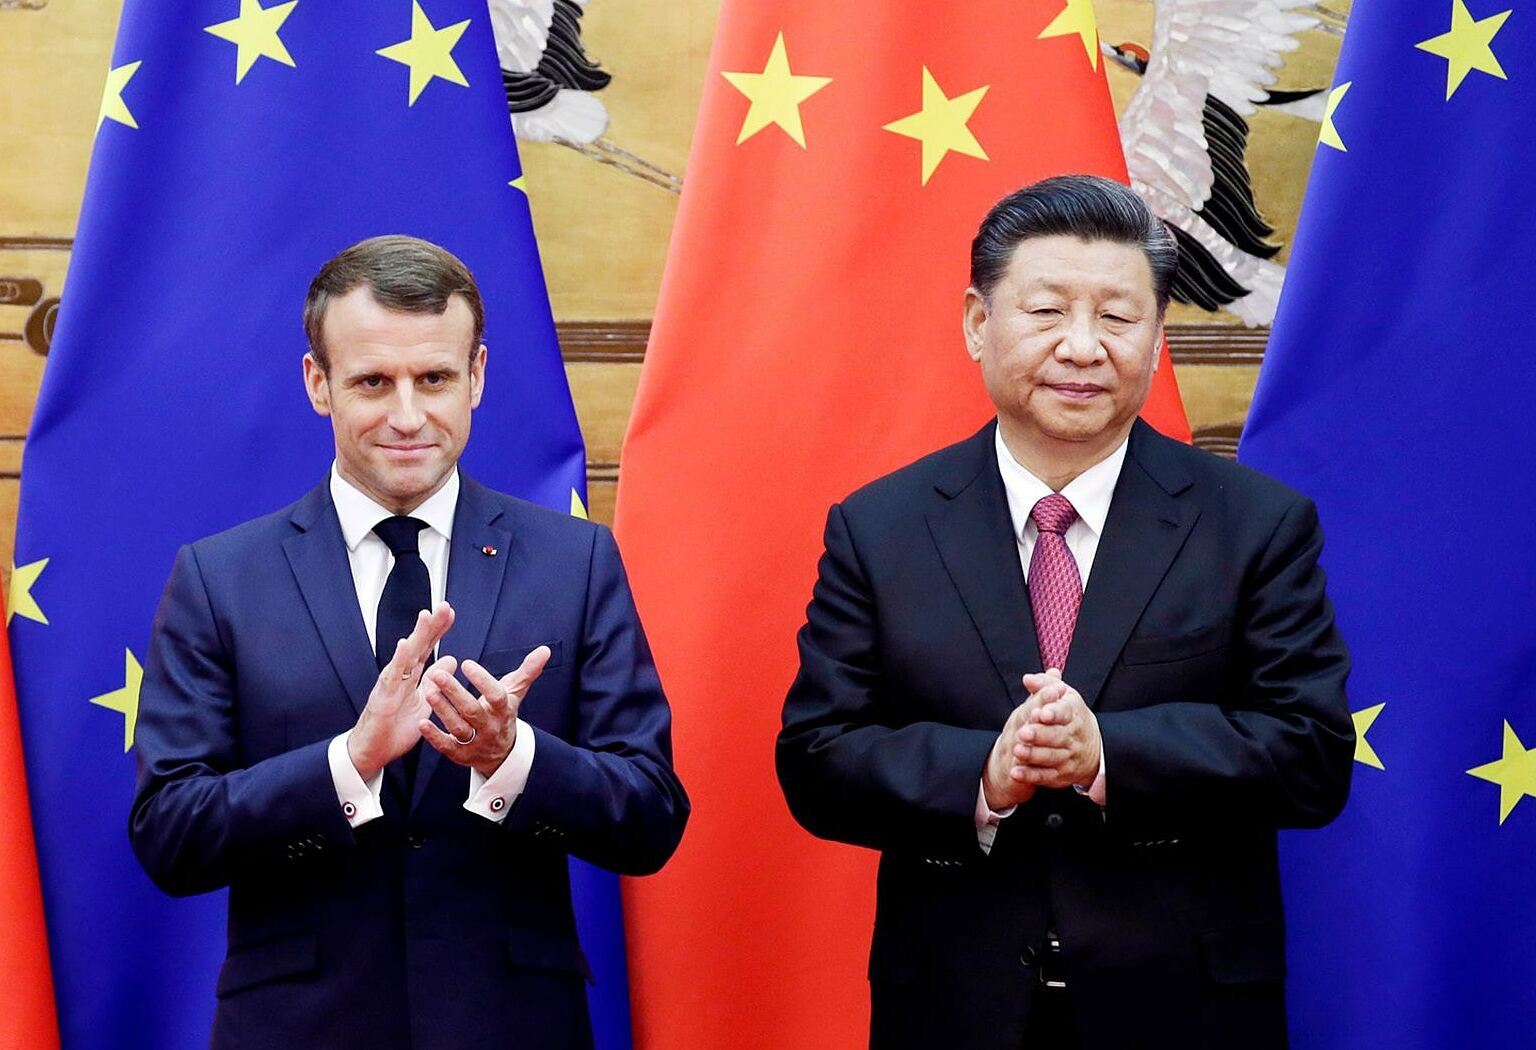 Tổng thống Pháp Emmanuel Macron (trái) và Chủ tịch Trung Quốc Tập Cận Bình trong cuộc gặp ở Bắc Kinh năm 2019. Ảnh: Reuters.